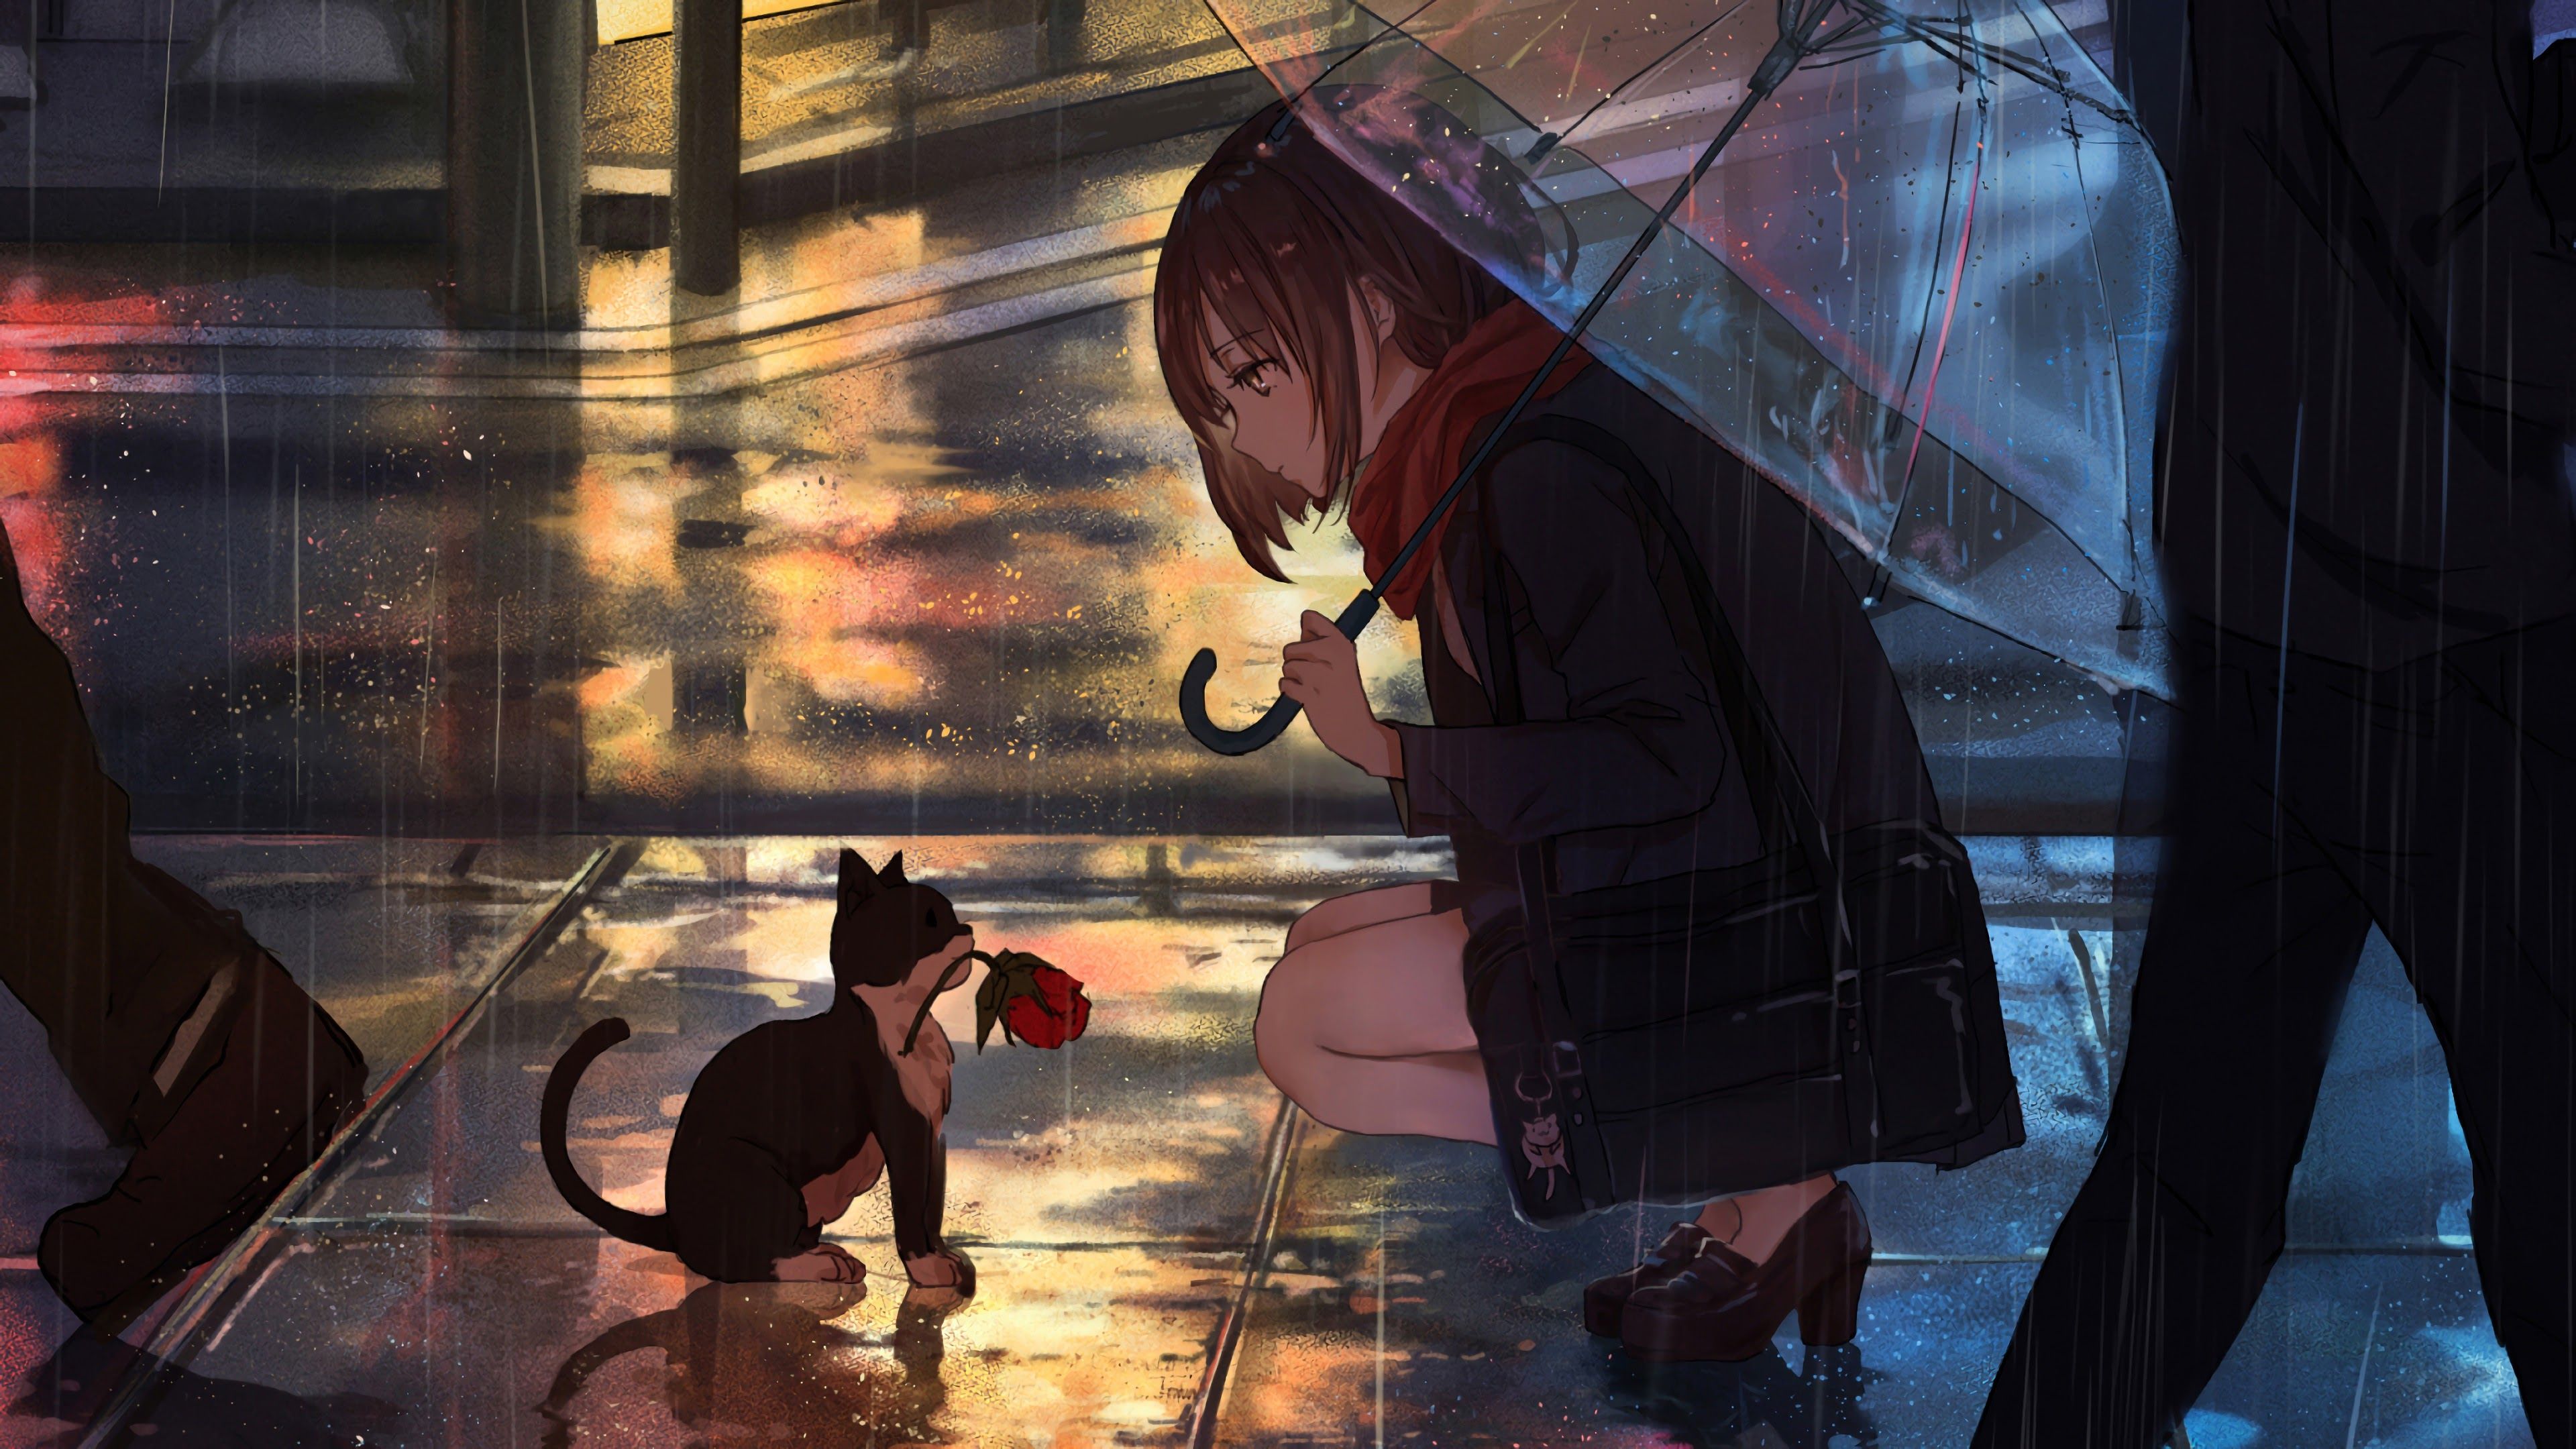 3840x2160 Anime Girl Raining Cat 4K Wallpaper on WallpaperBat